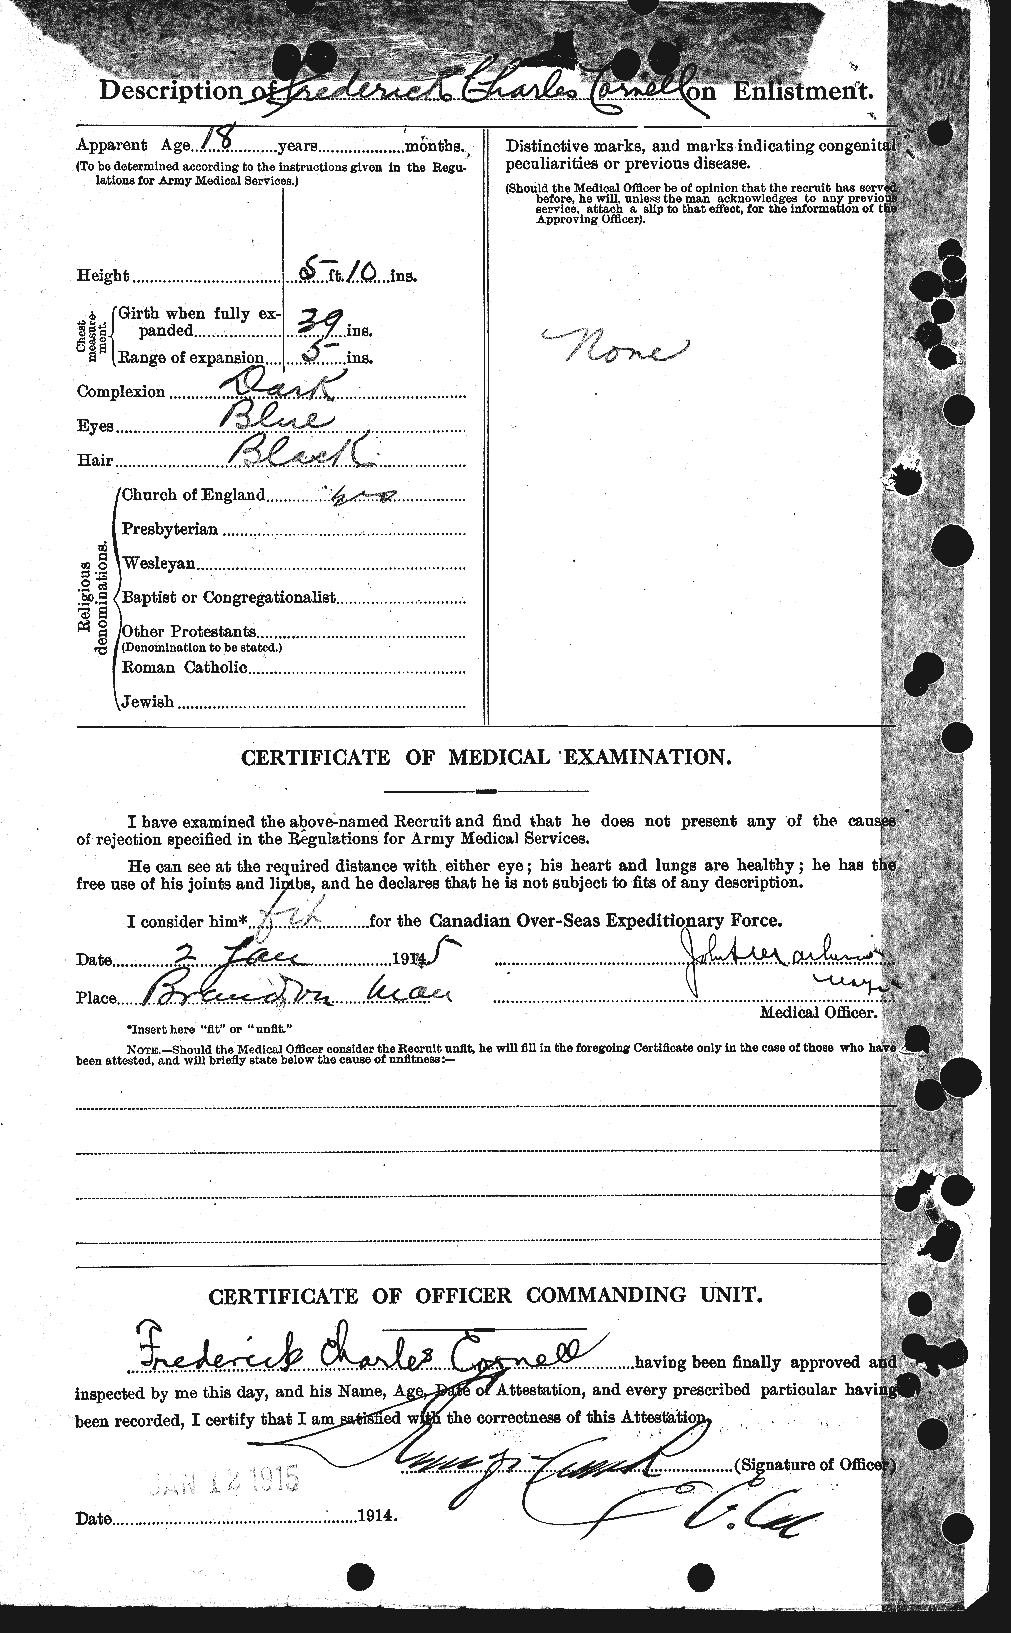 Dossiers du Personnel de la Première Guerre mondiale - CEC 056621b